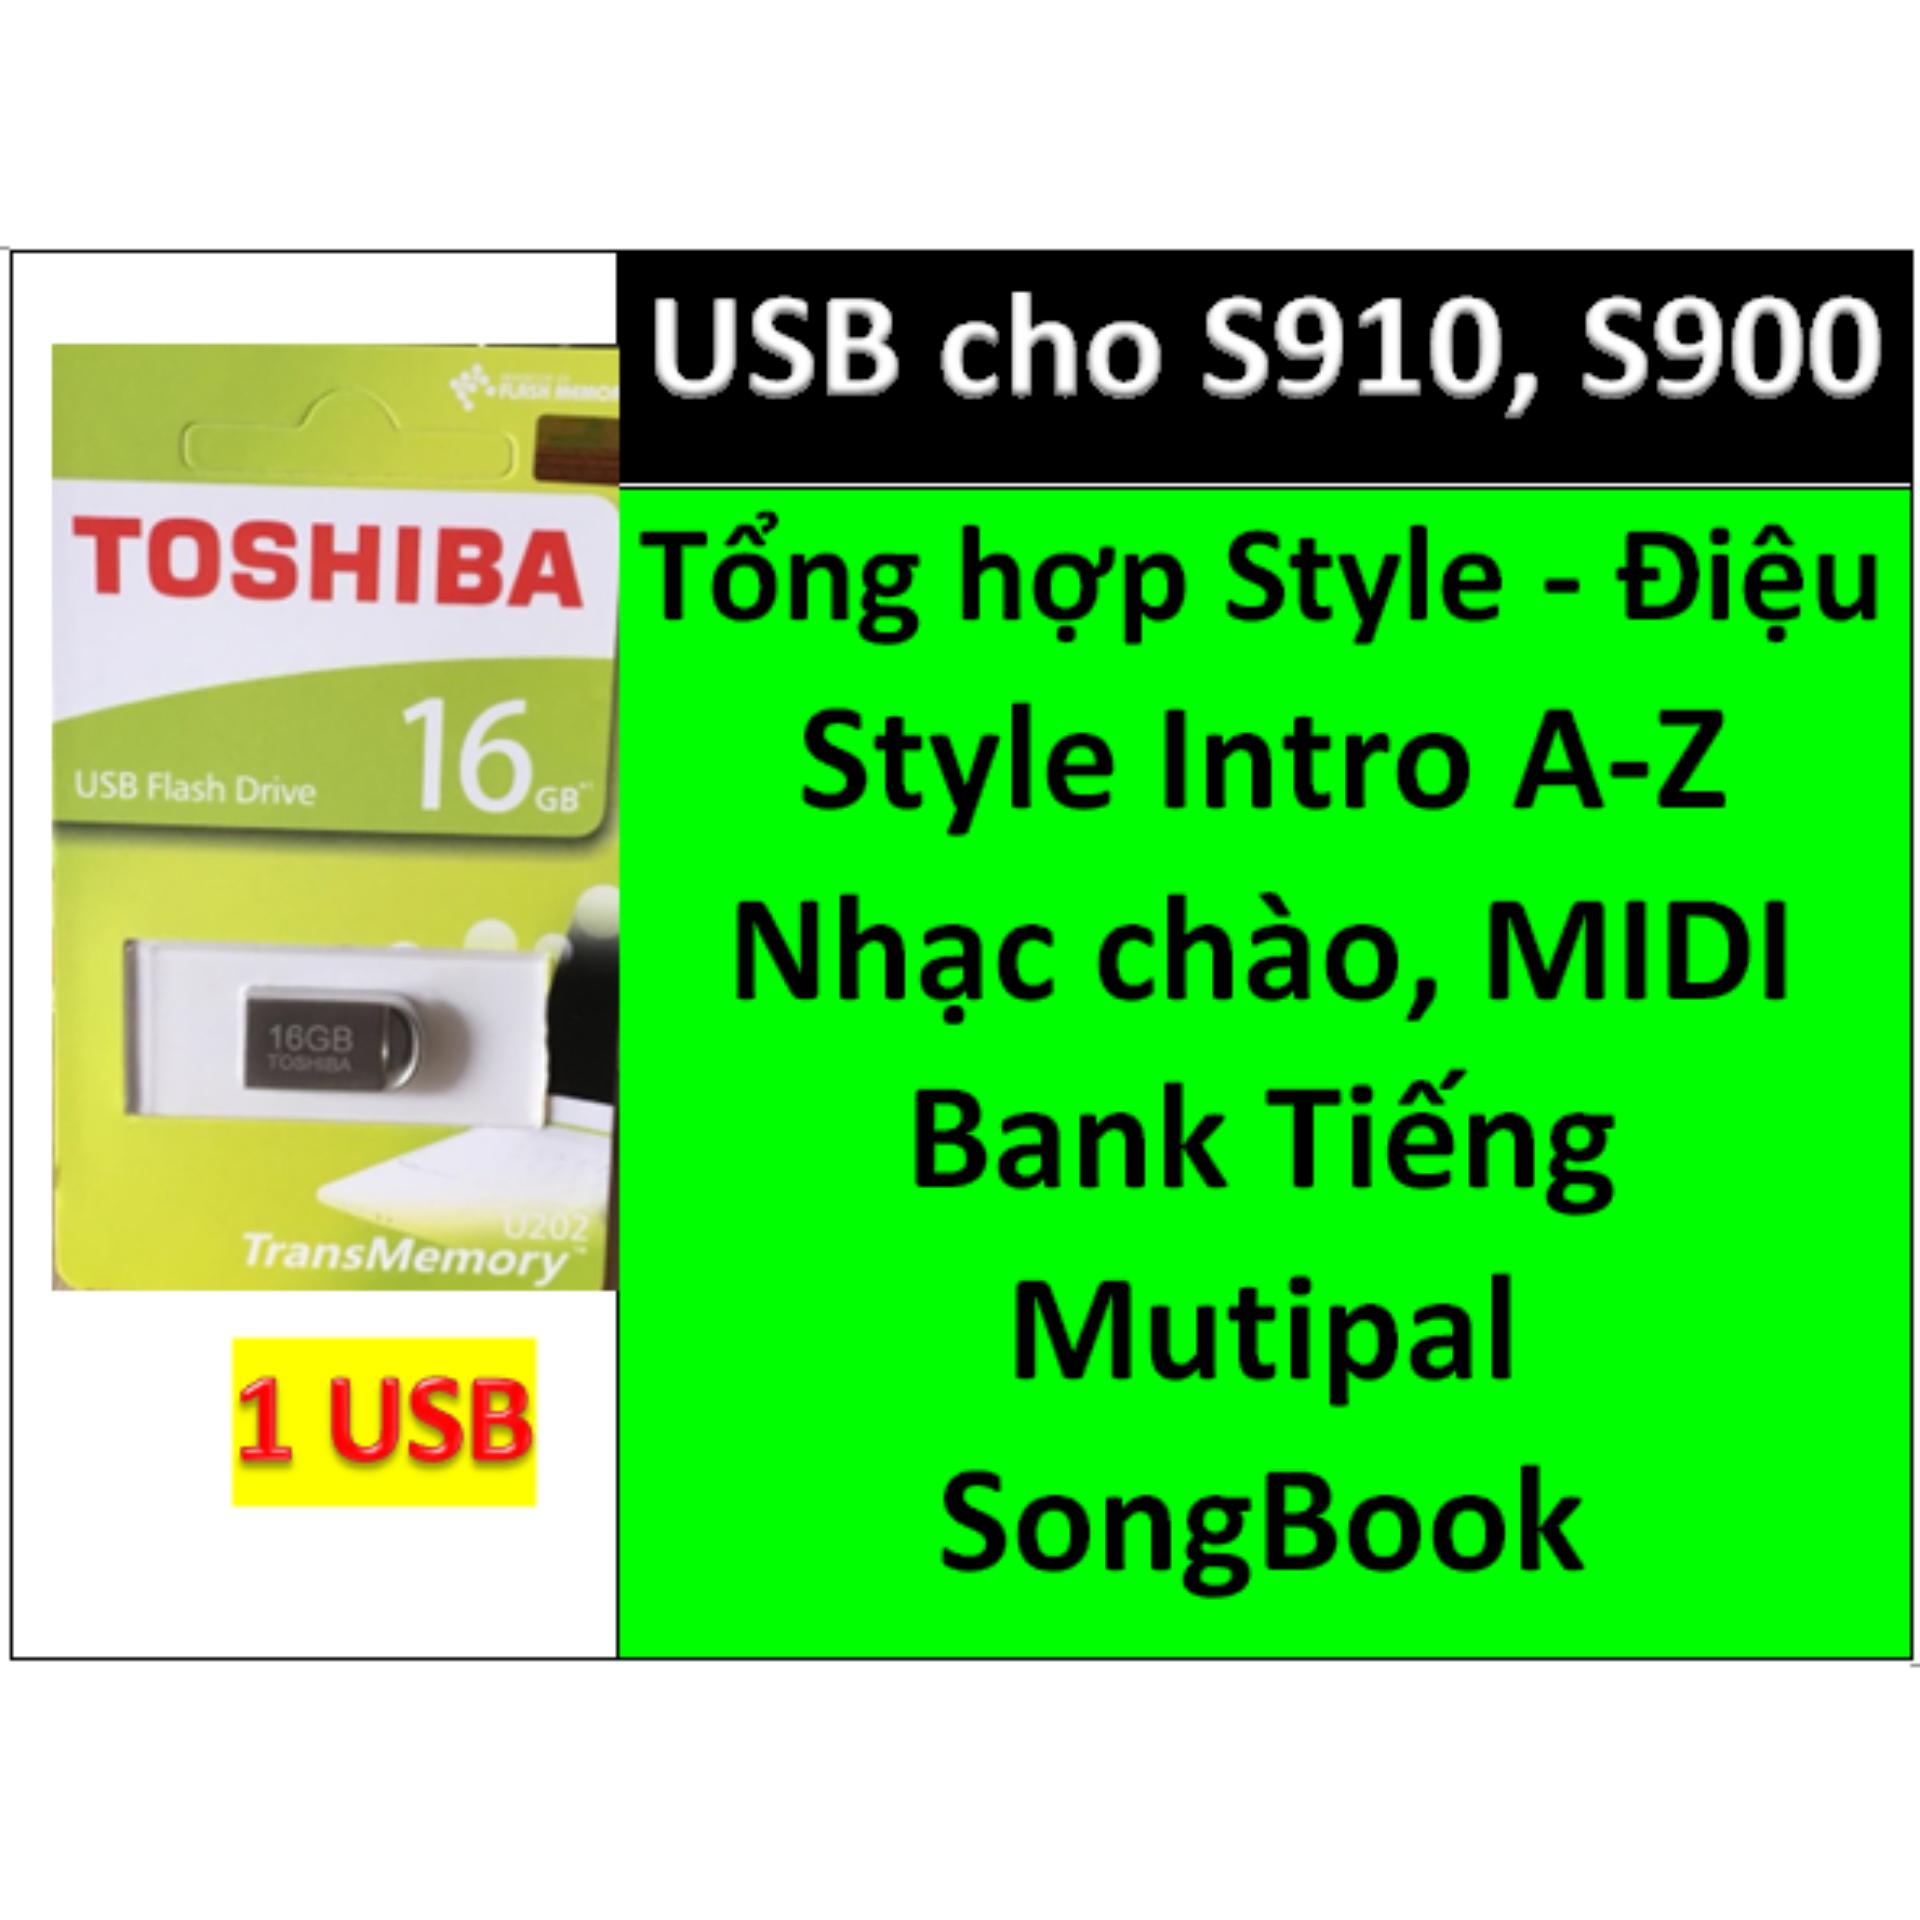 USB mini cho đàn organ yamaha PSR-S900 và S910 Style, nhạc chào, songbook, midi + Full dữ liệu làm show